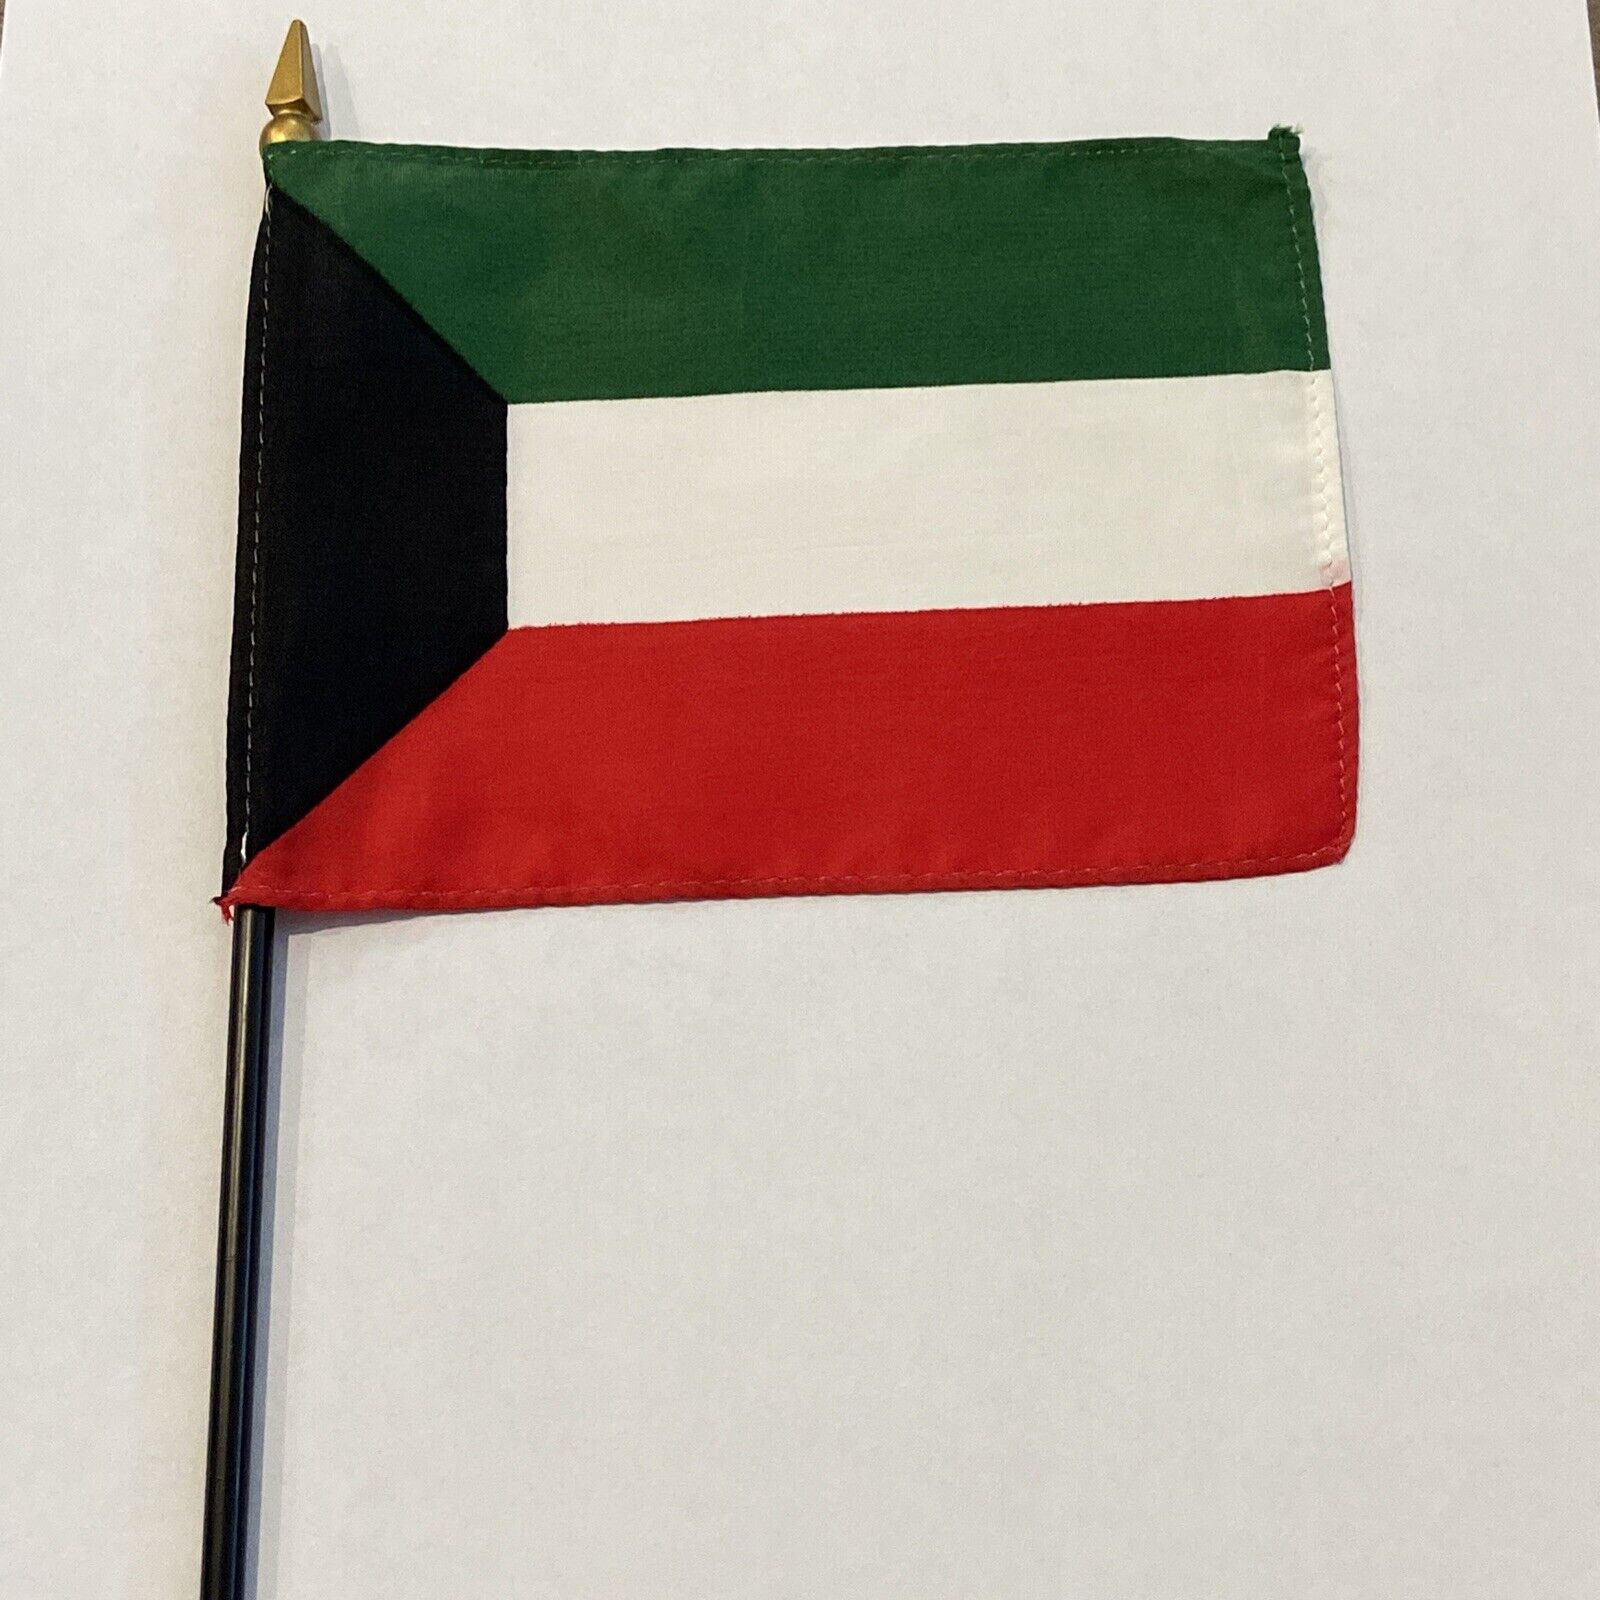 New Kuwait Mini Desk Flag - Black Wood Stick Gold Top 4” X 6”